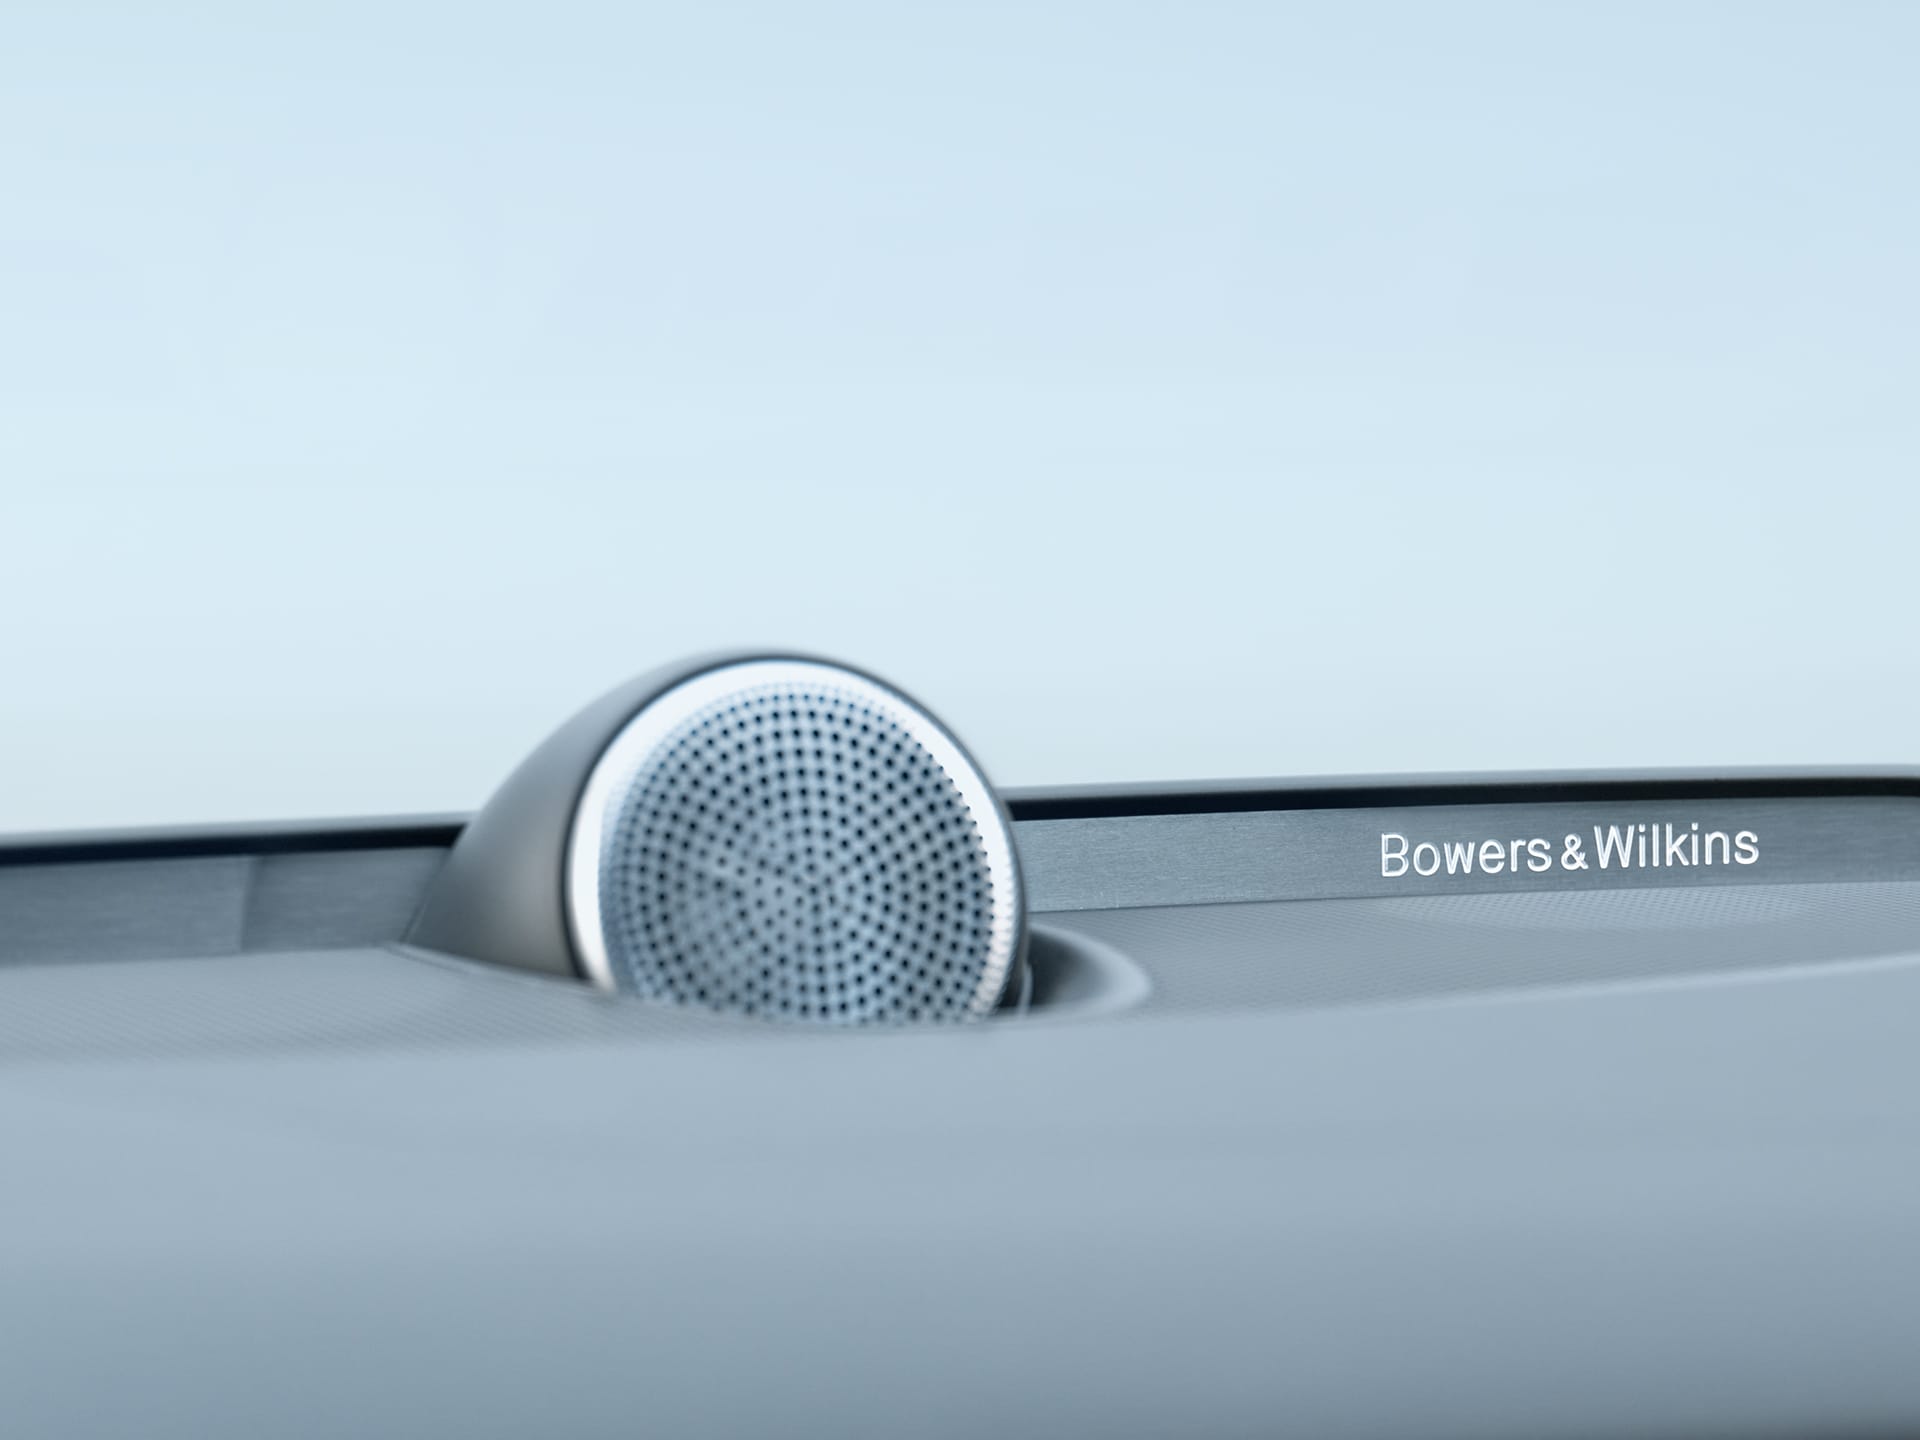 Altavoces Bowers & Wilkins en el interior de un sedán Volvo S60.